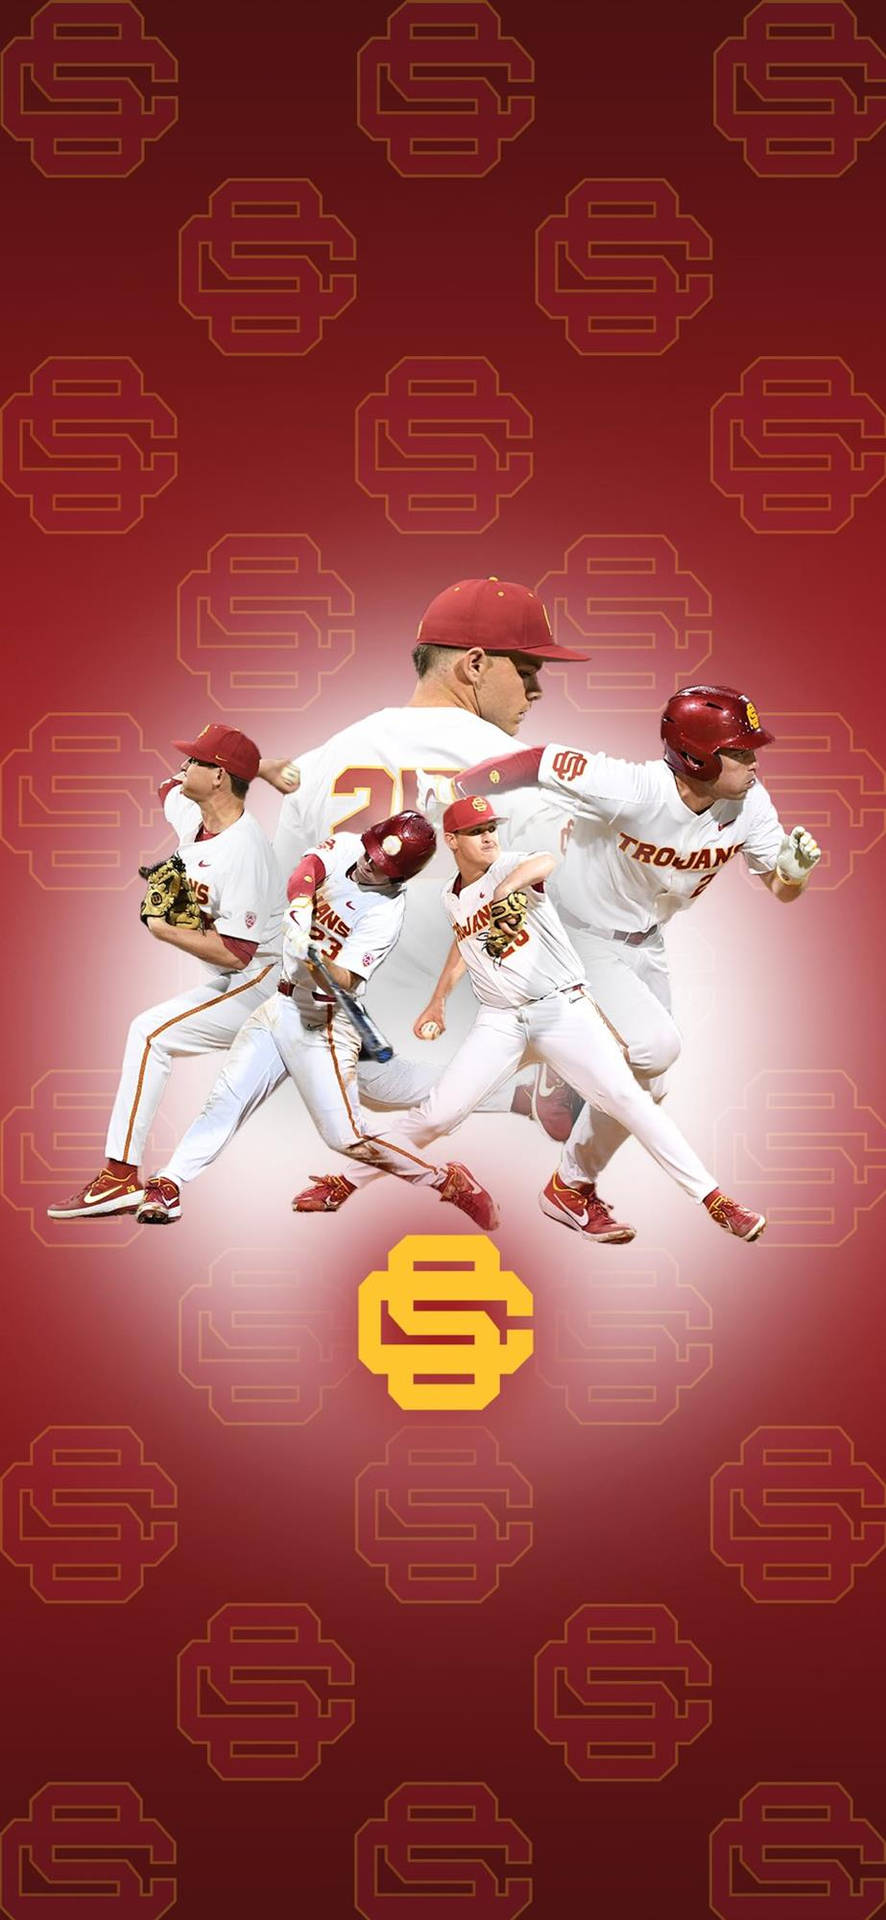 Universitätvon Südkalifornien Baseballteam Der Trojans Wallpaper